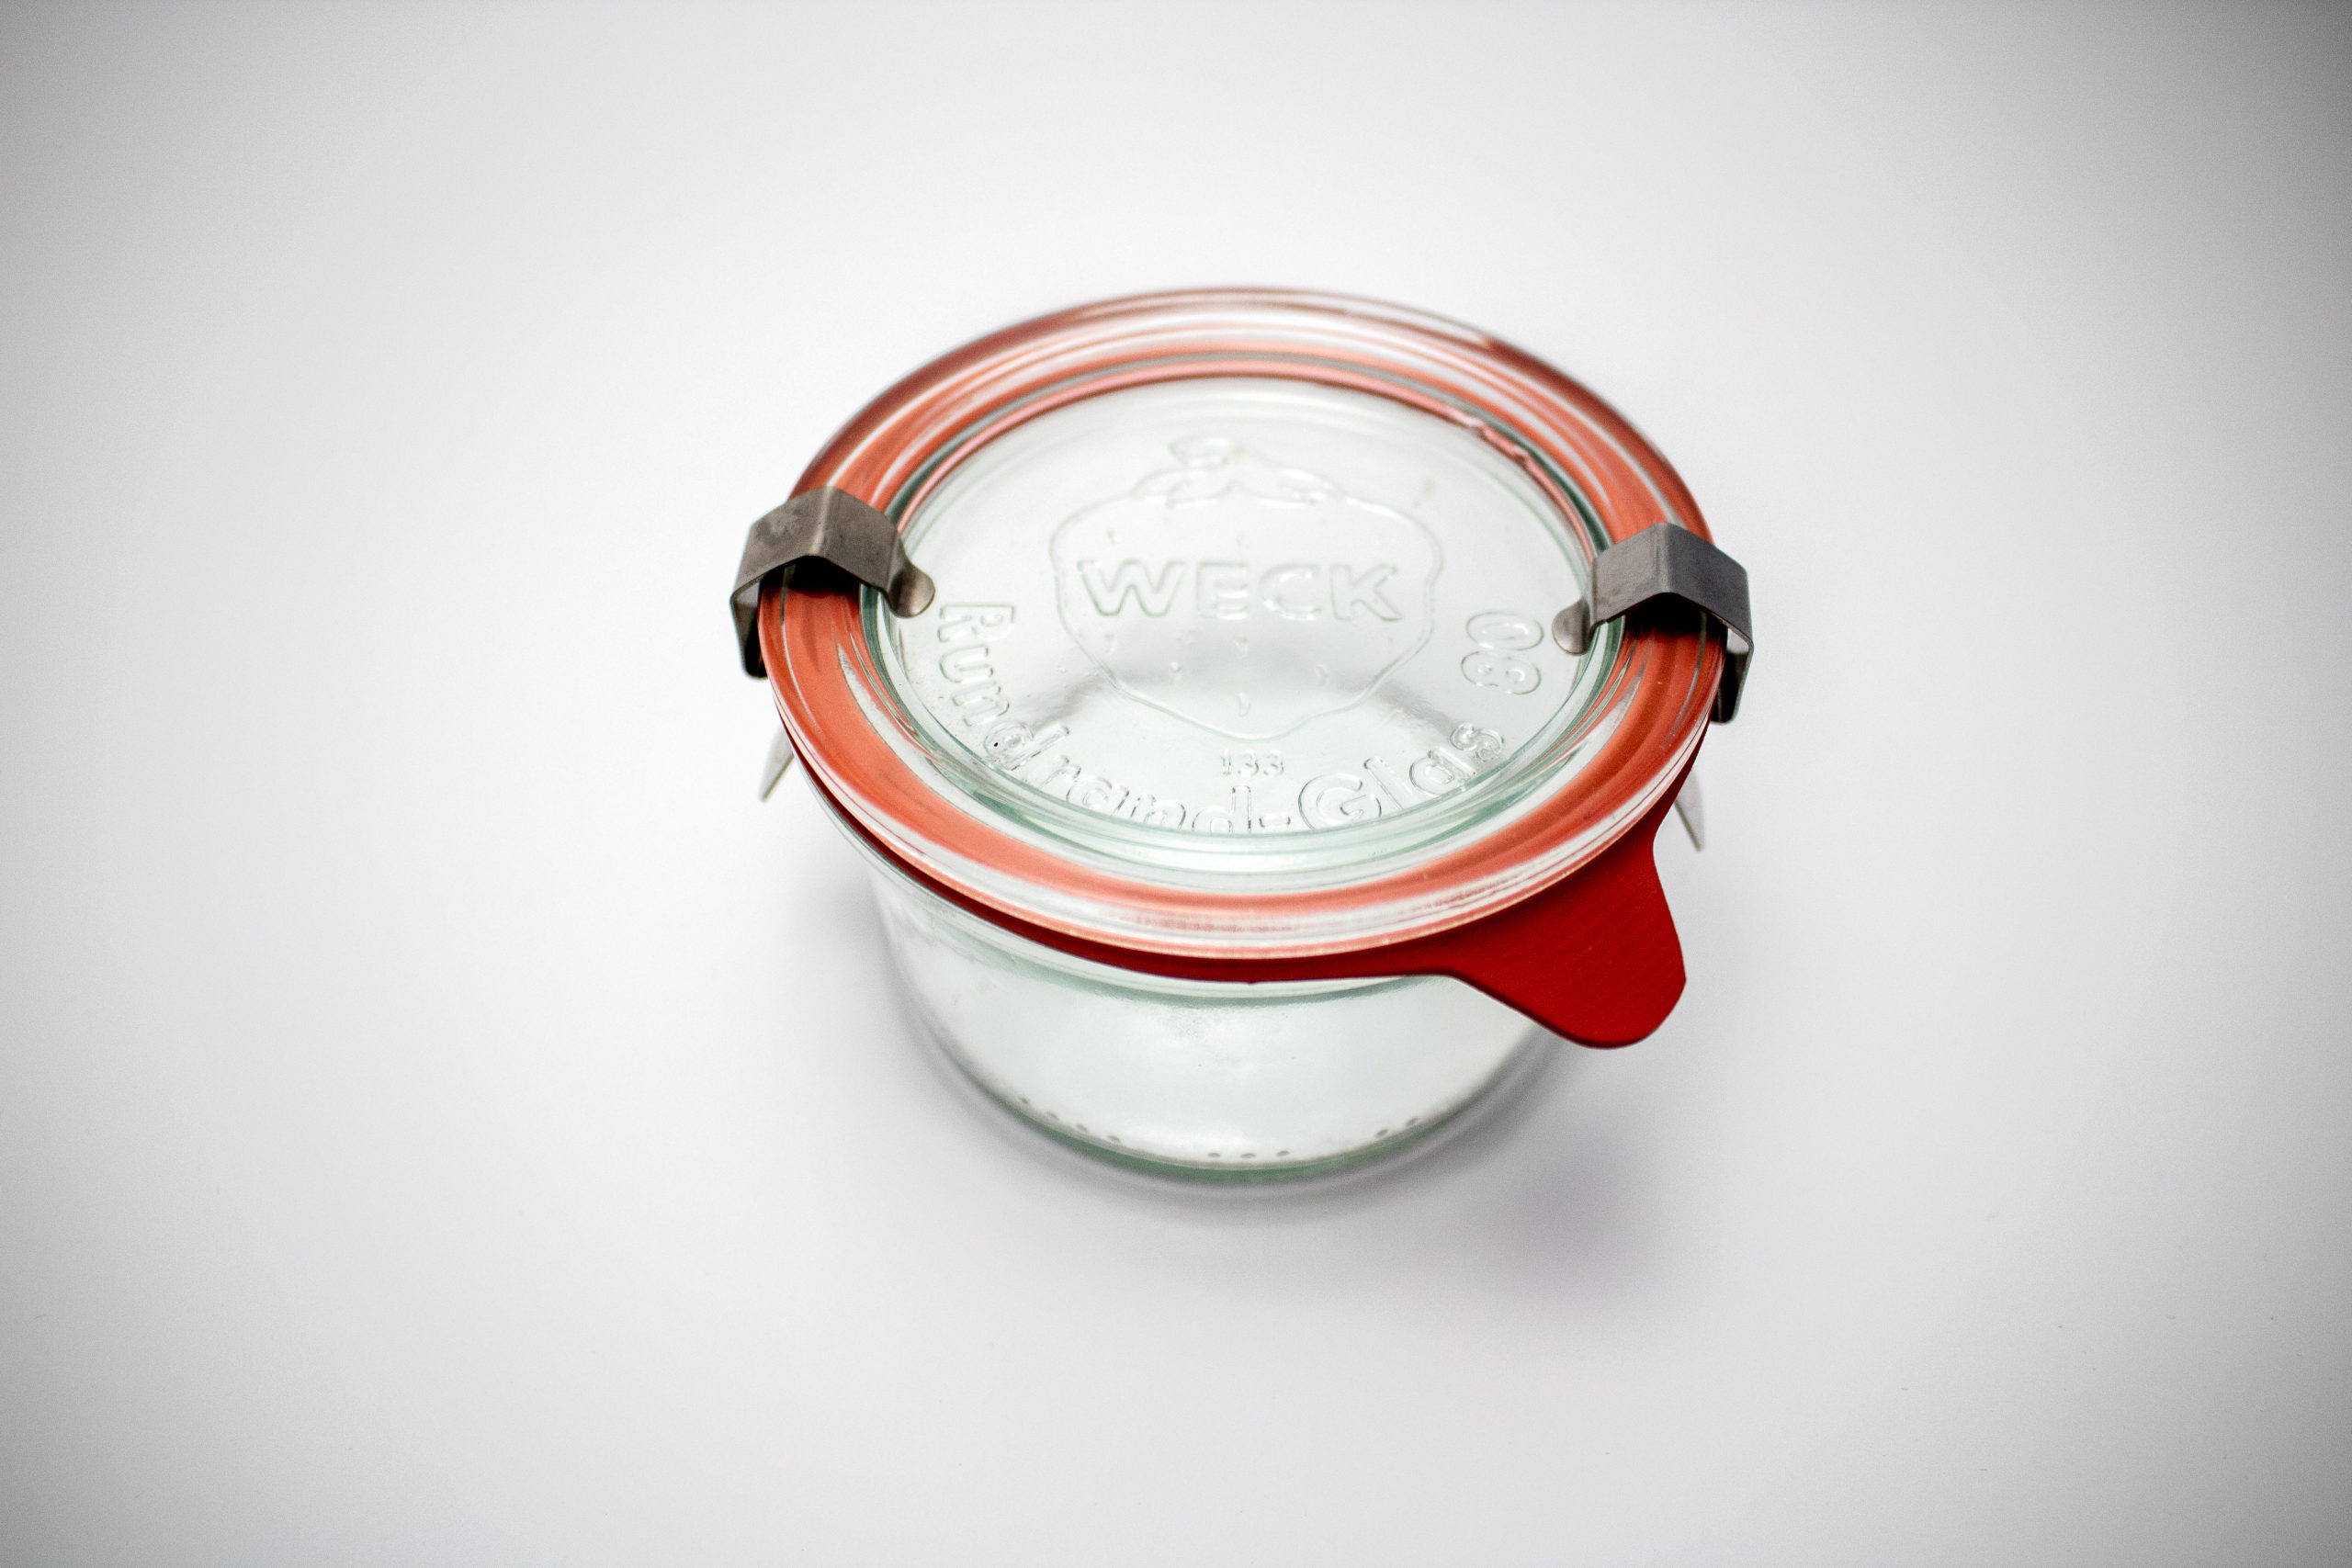 742 - 1/2 L Mold Jar (Set of 6) - Weck Jars